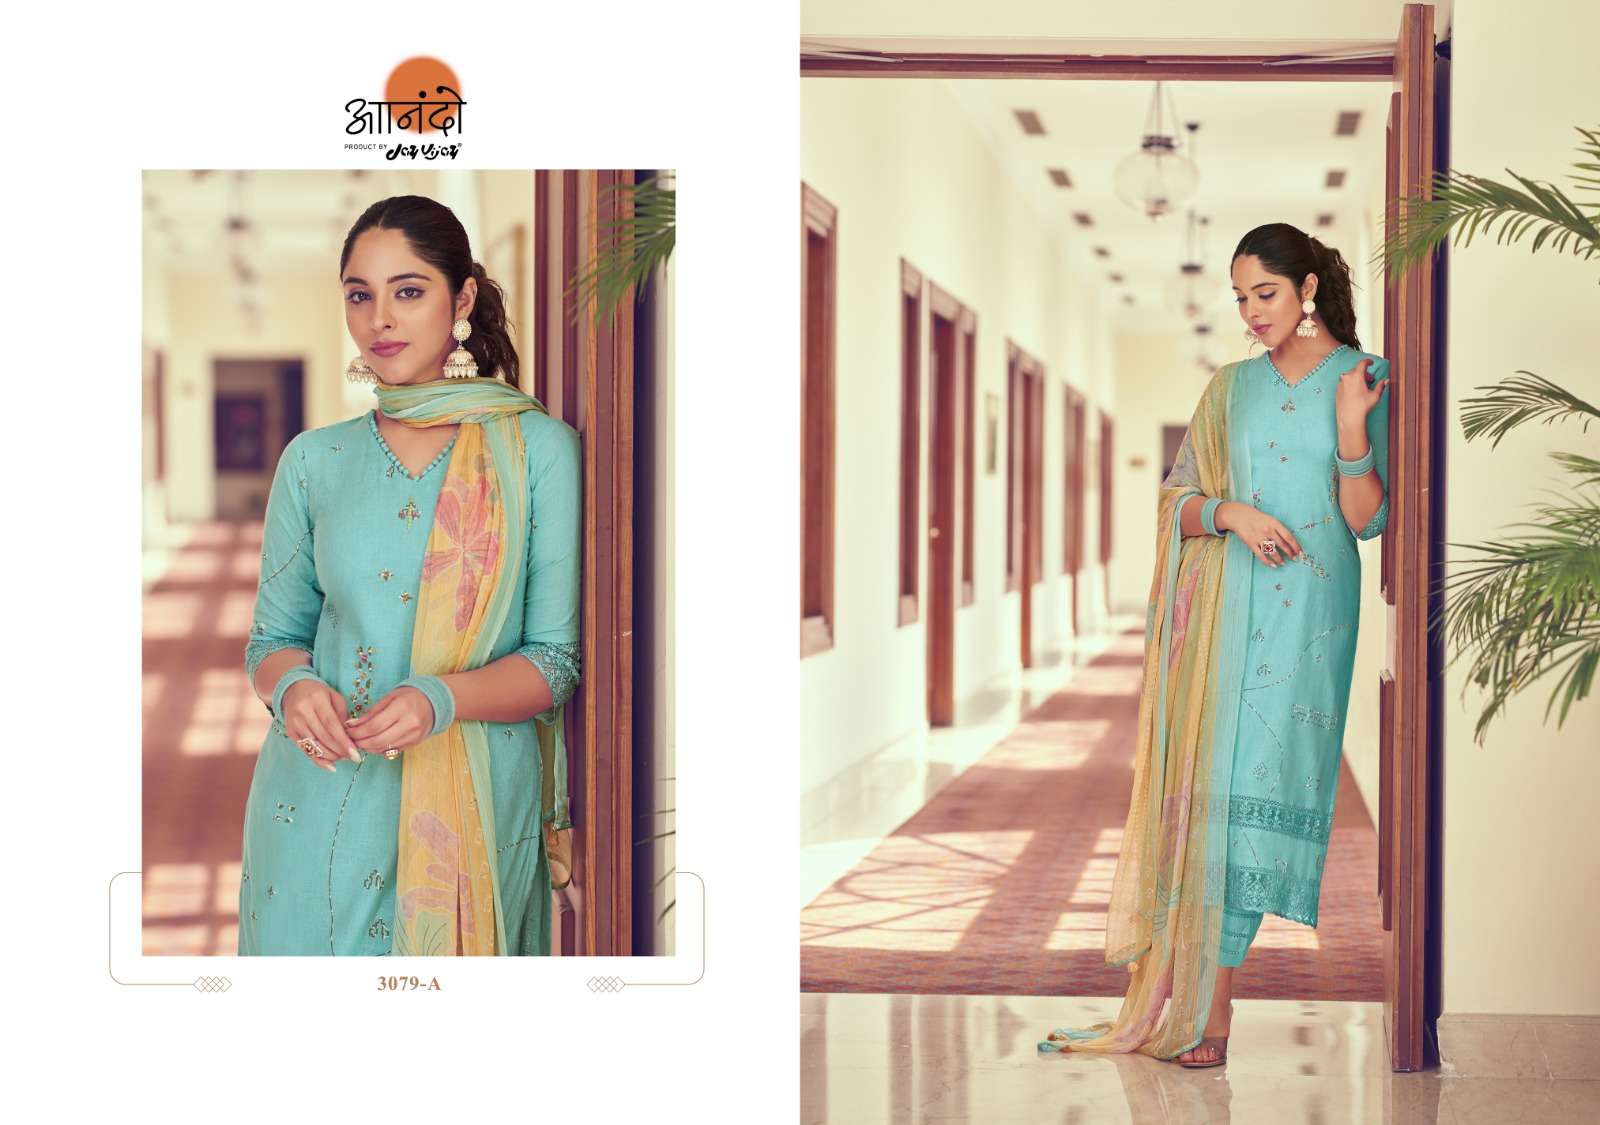 jayvijay lenora 3079 series indian designer salwar suits catalogue wholesale price surat